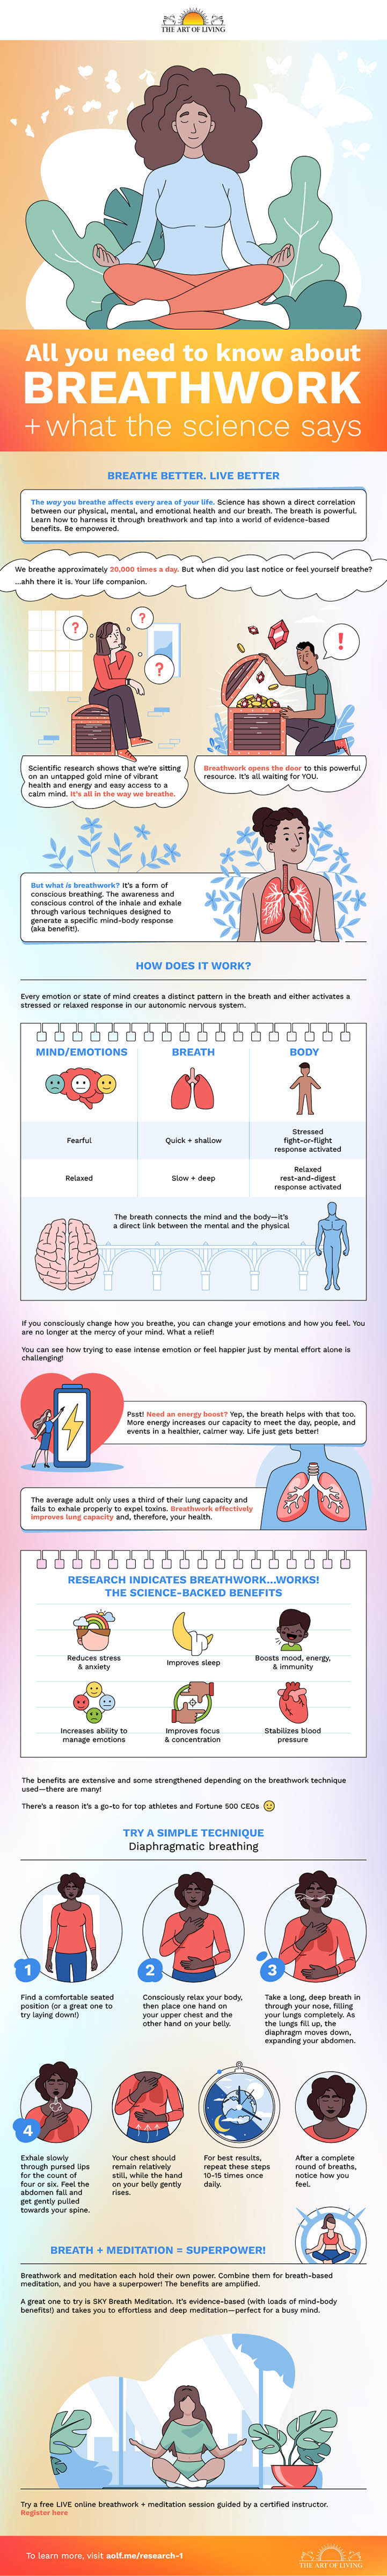 breathwork infographic